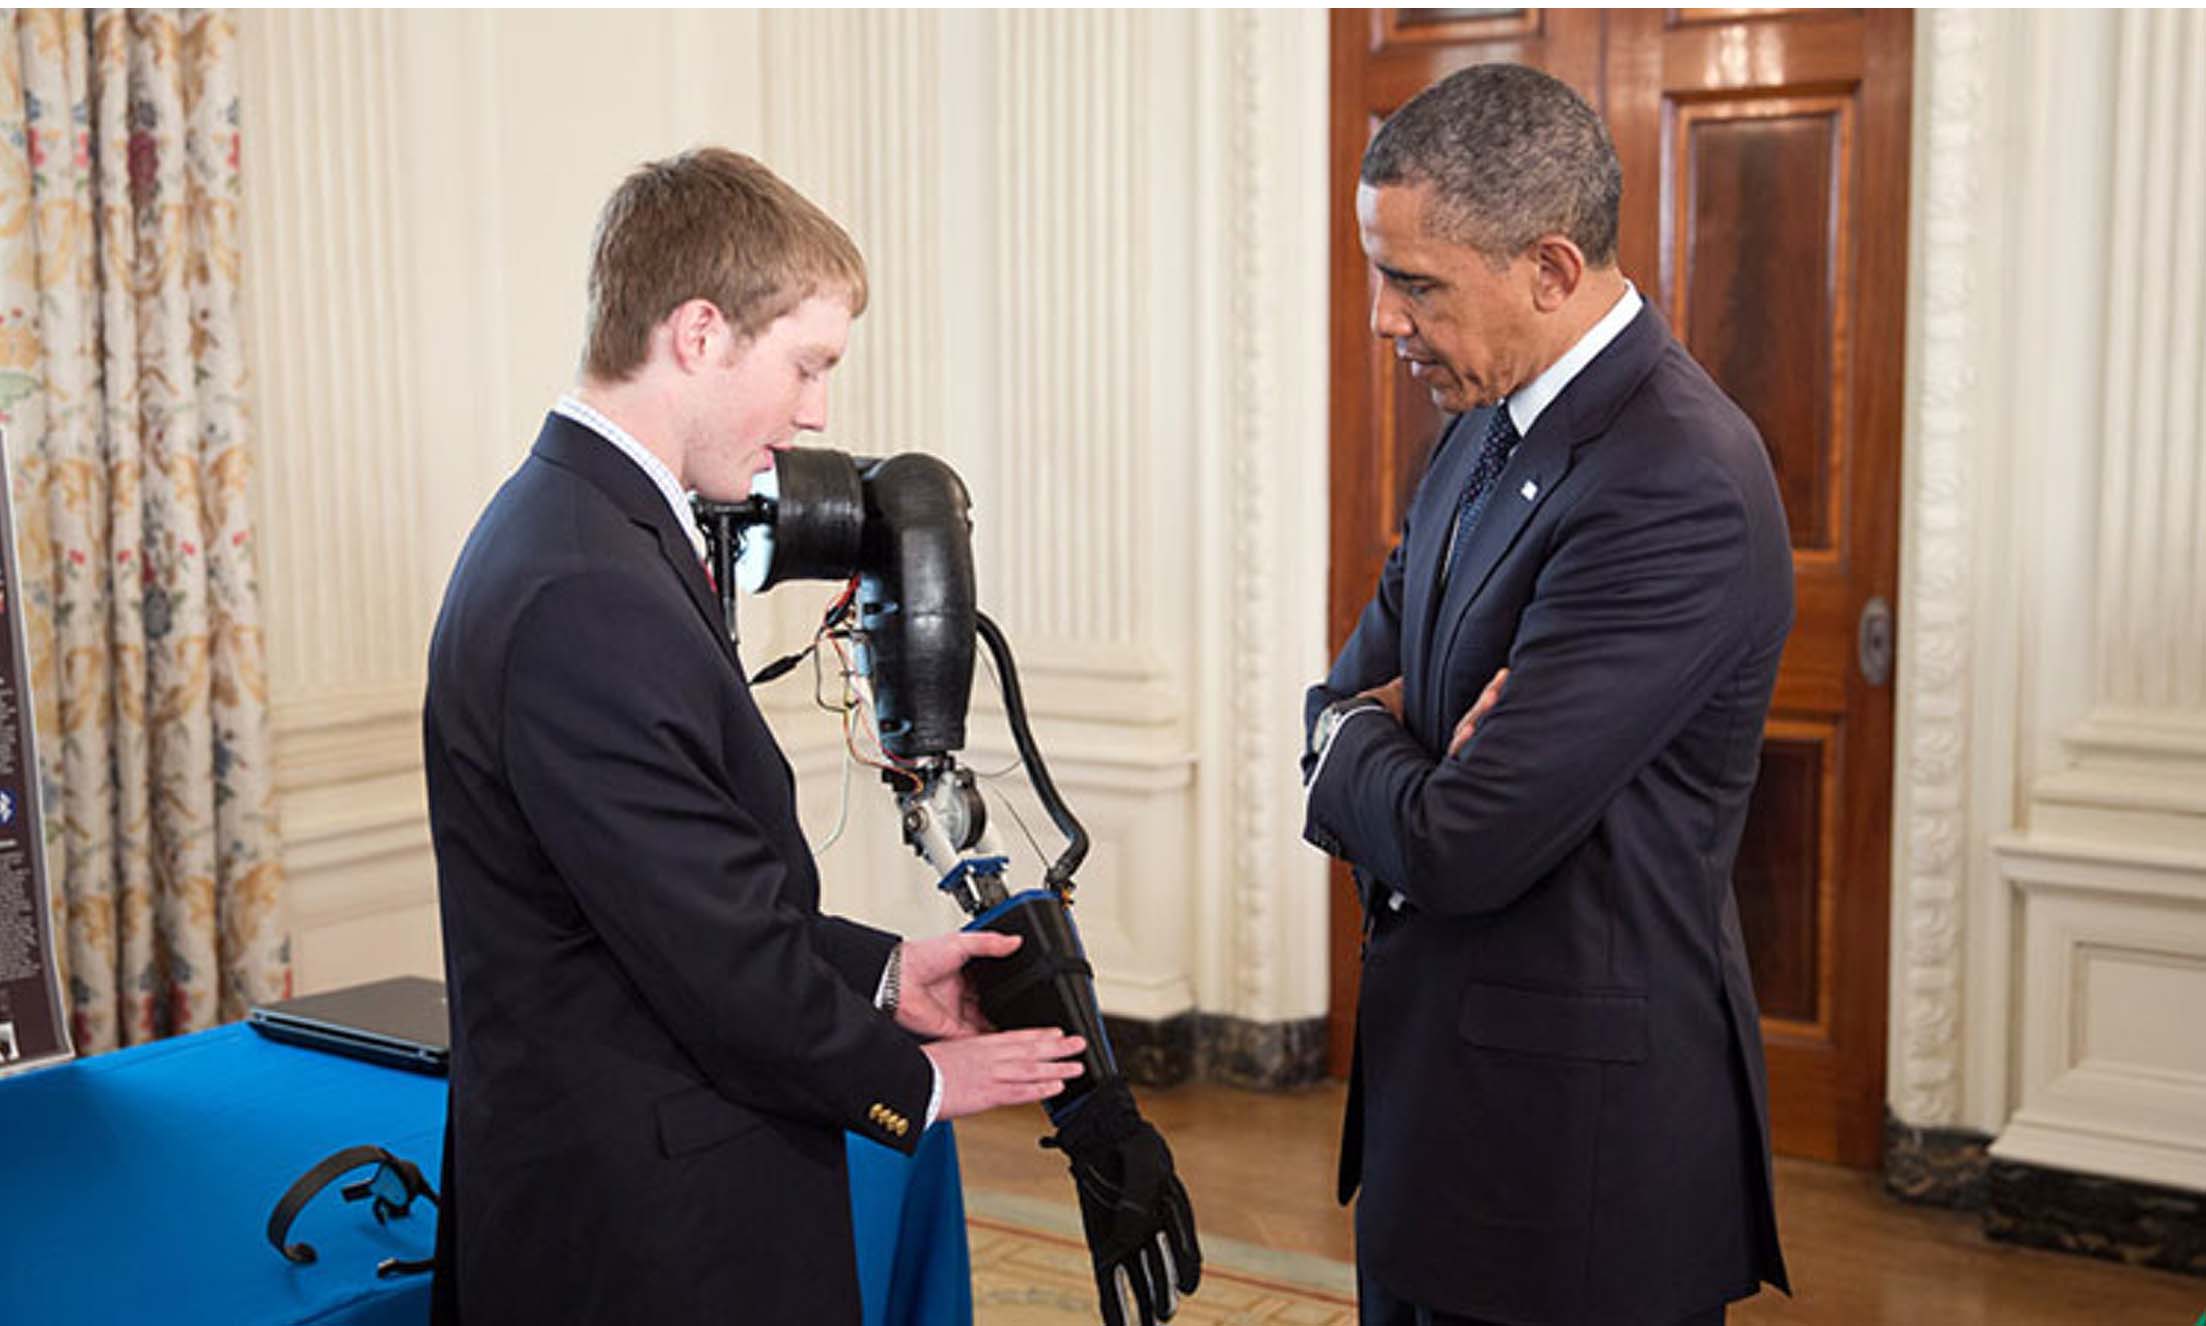 Easton LACHAPELLE présente sa prothèse de bras low cost devant Barack OBAMA